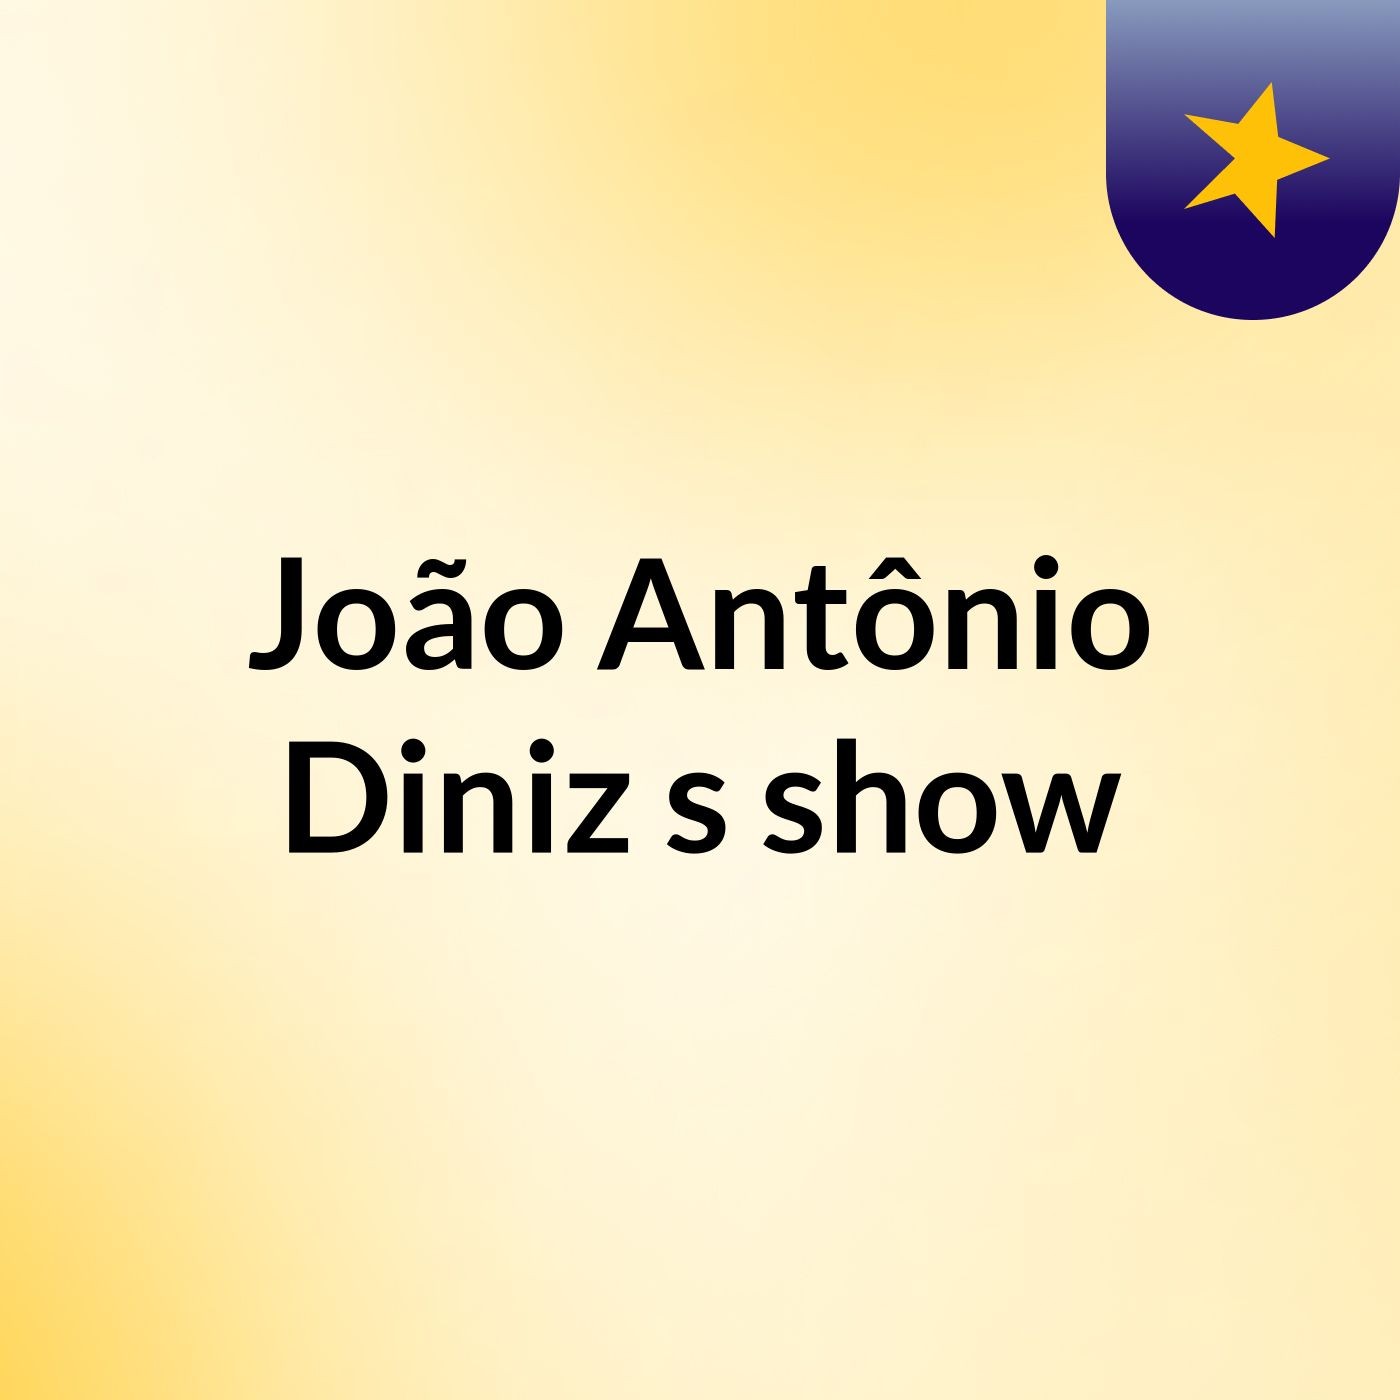 João Antônio Diniz's show